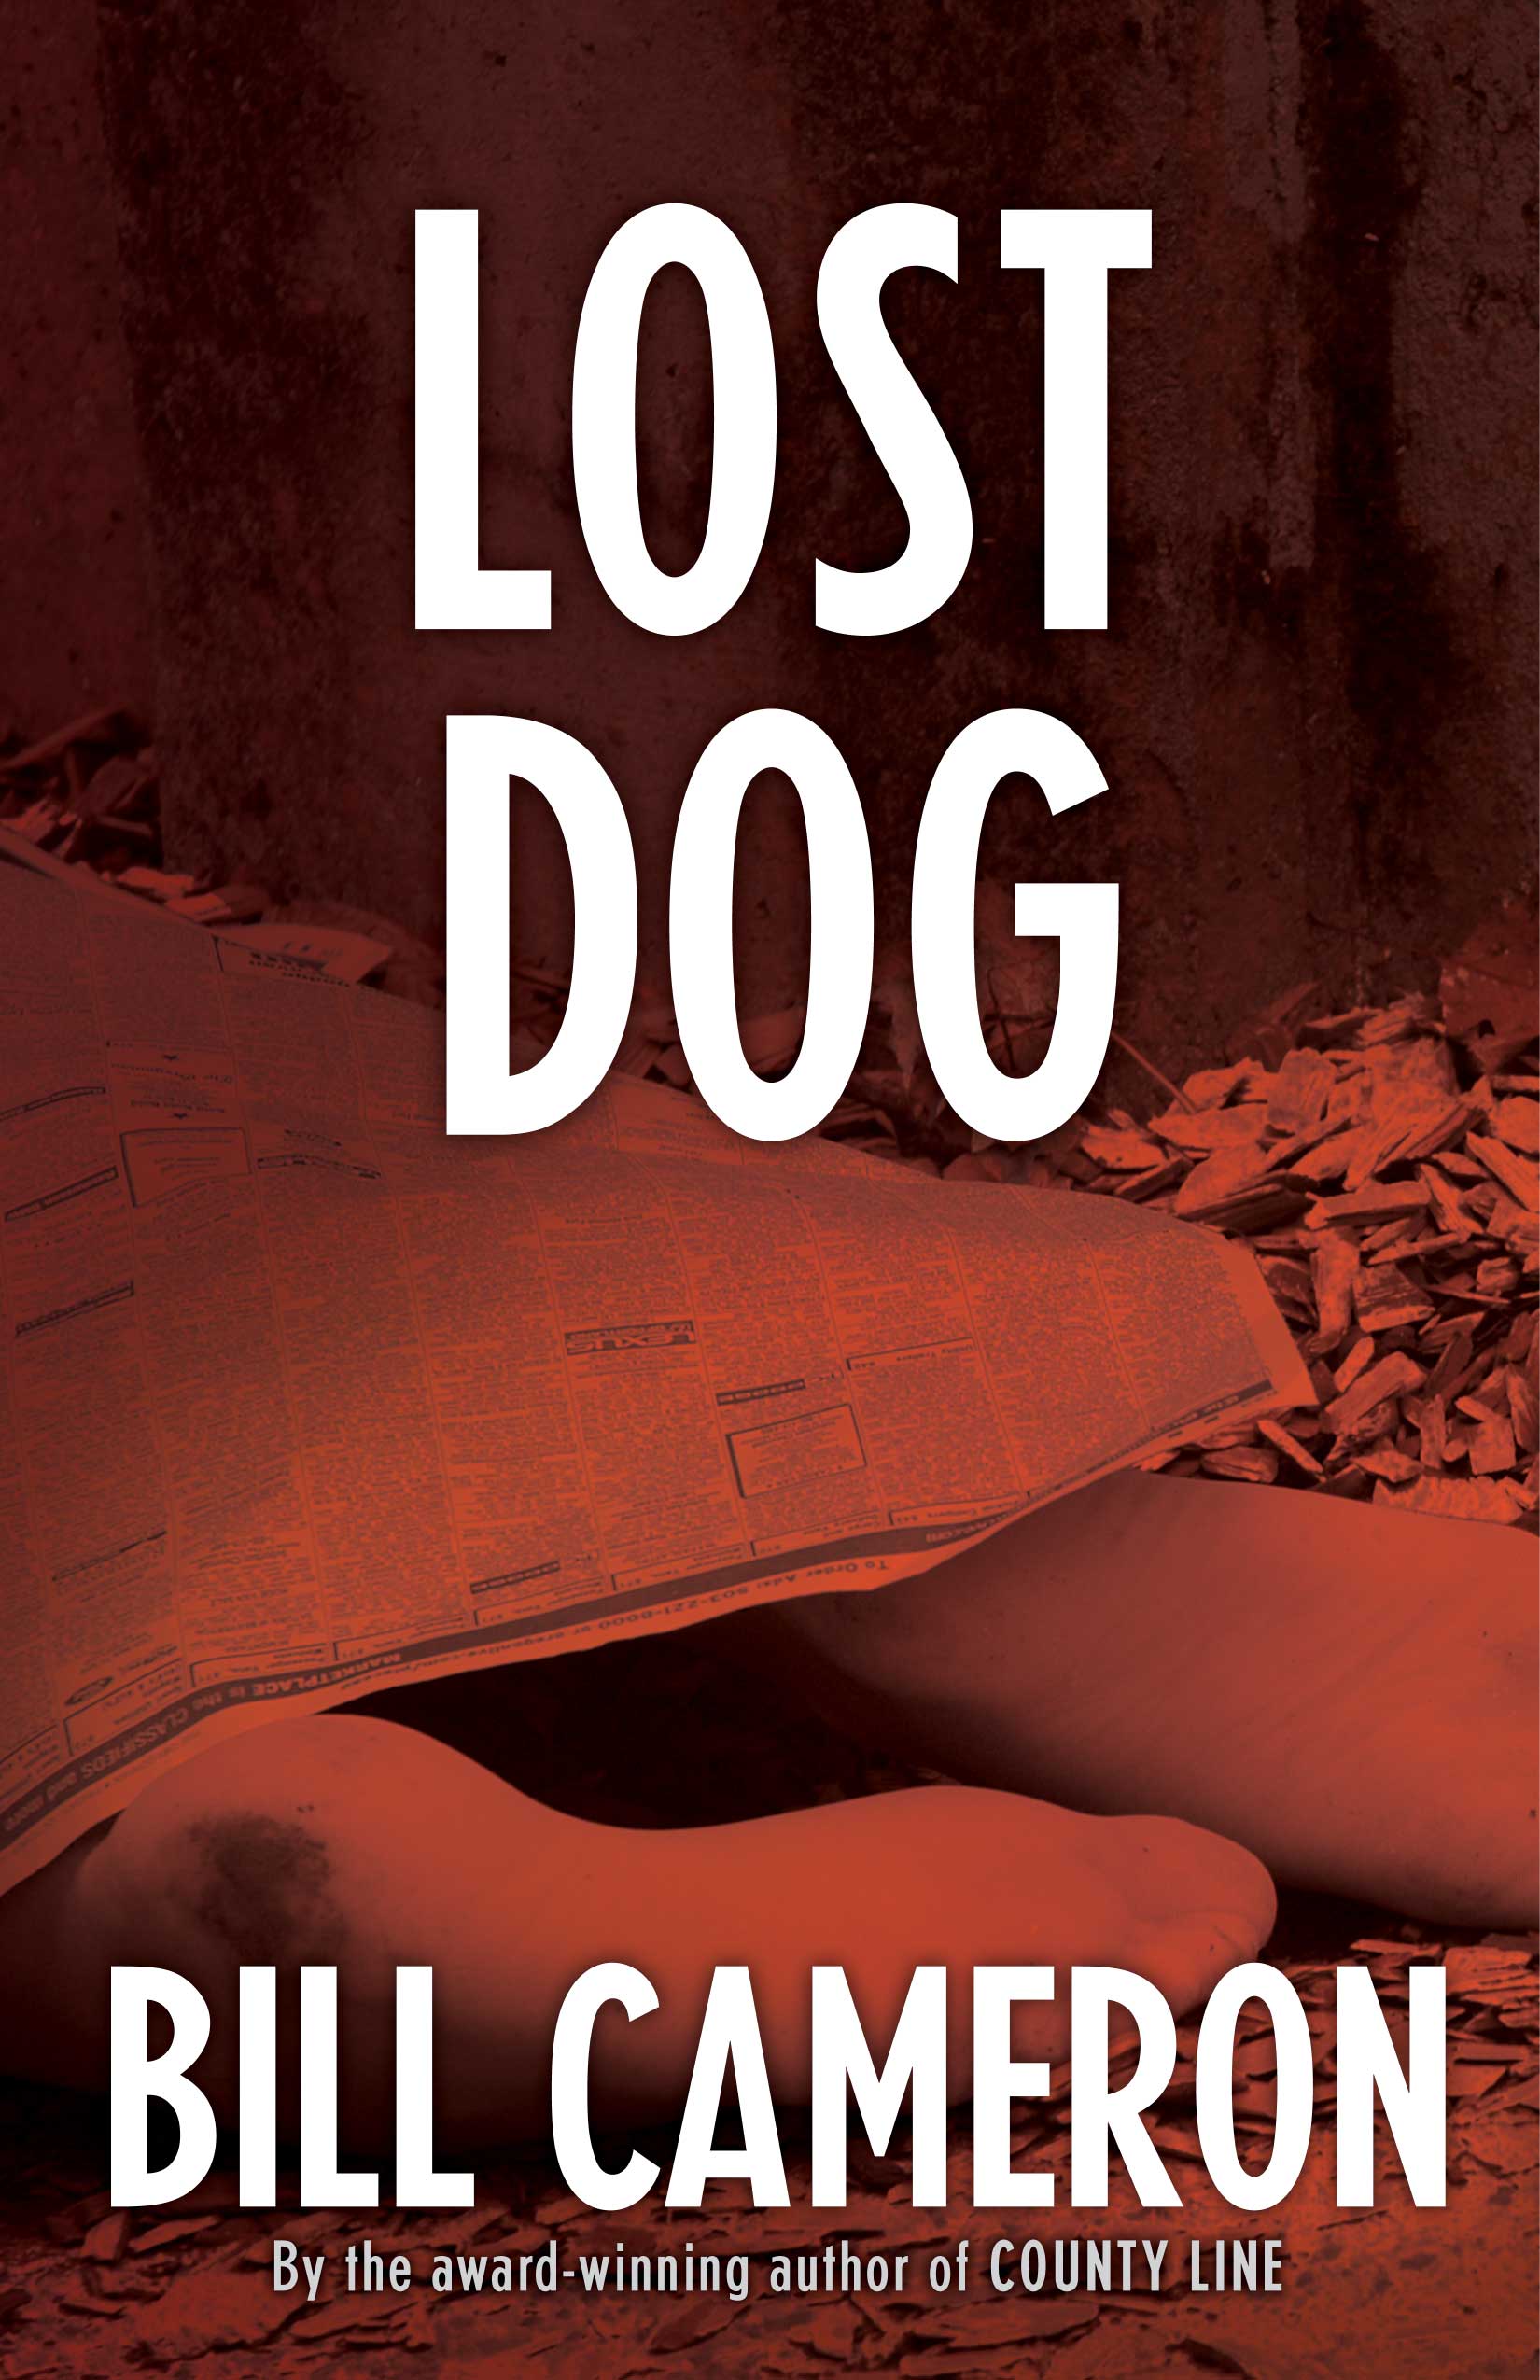 File:Lost dog large.jpg